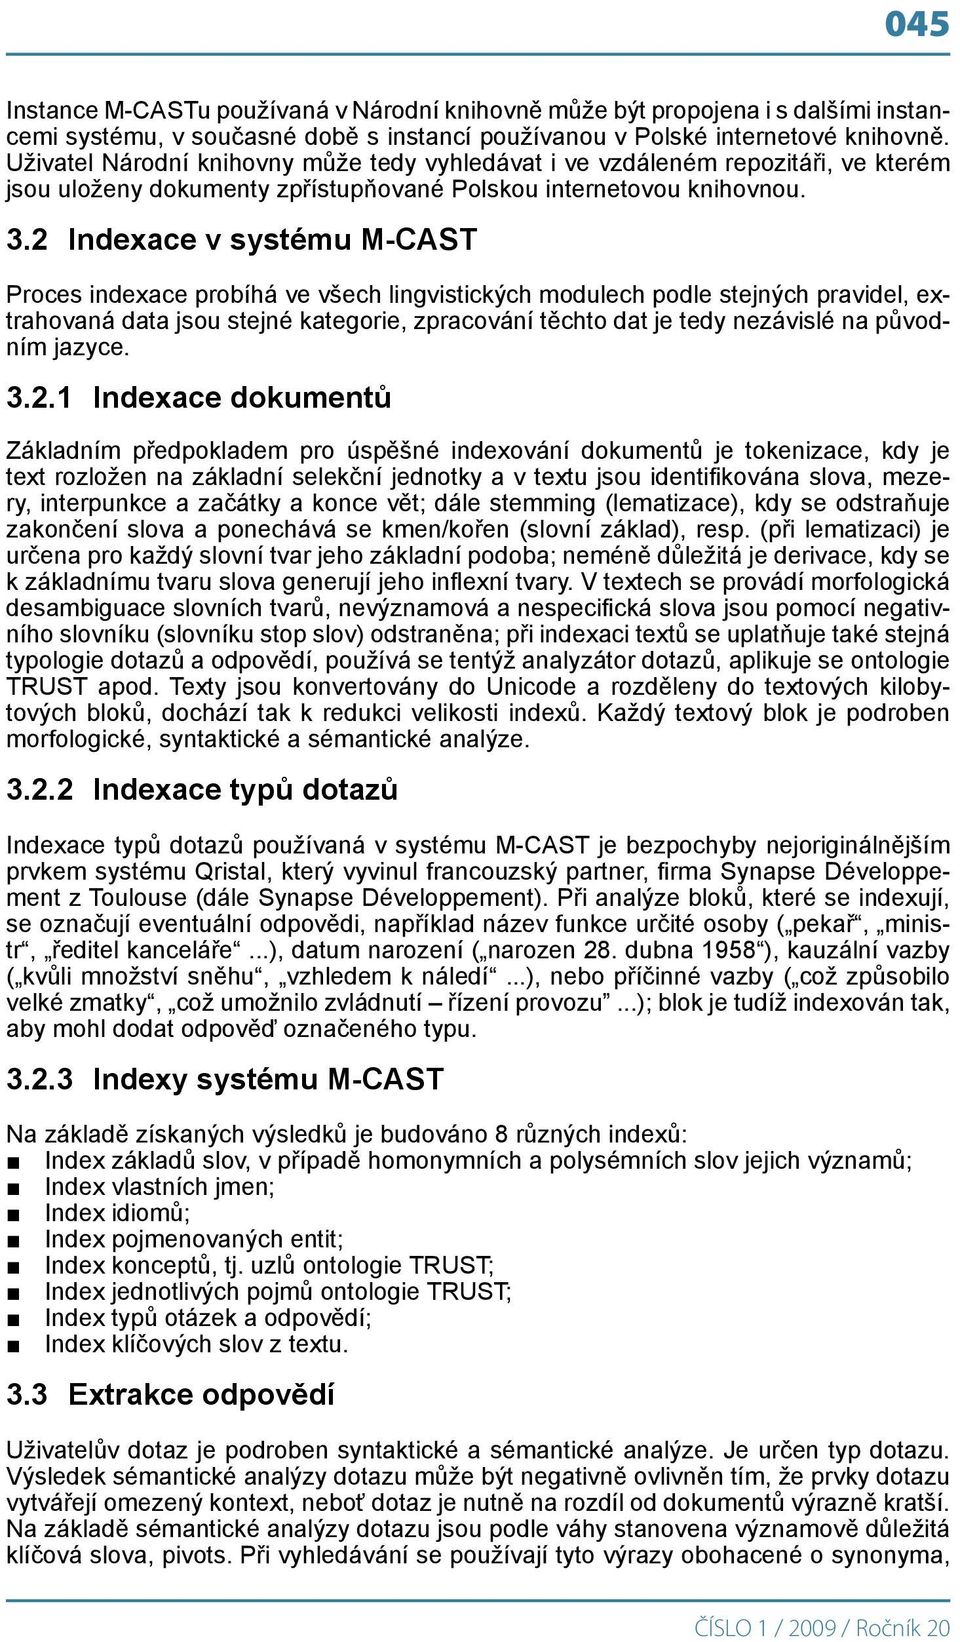 2 Indexace v systému M-CAST Proces indexace probíhá ve všech lingvistických modulech podle stejných pravidel, extrahovaná data jsou stejné kategorie, zpracování těchto dat je tedy nezávislé na